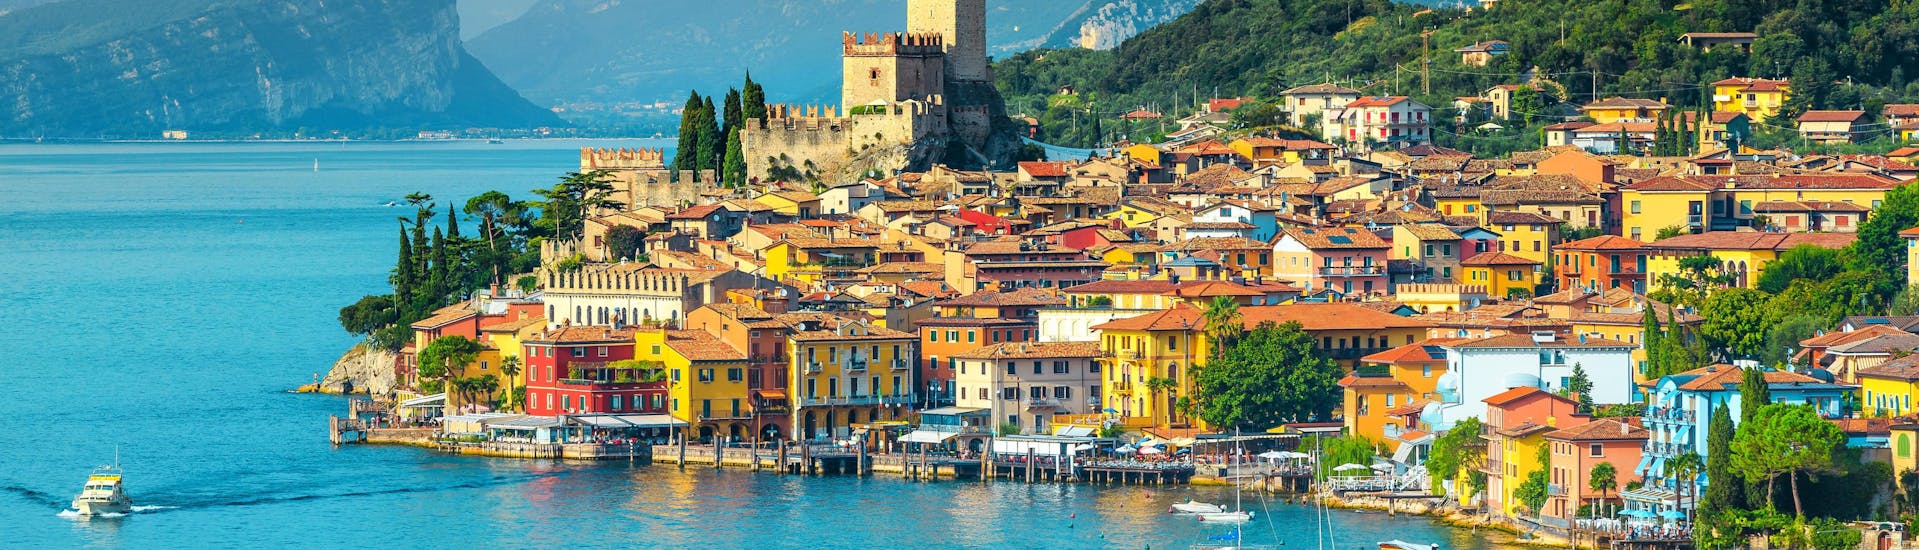 Die Stadt Malcesine am Gardasee in Italien.